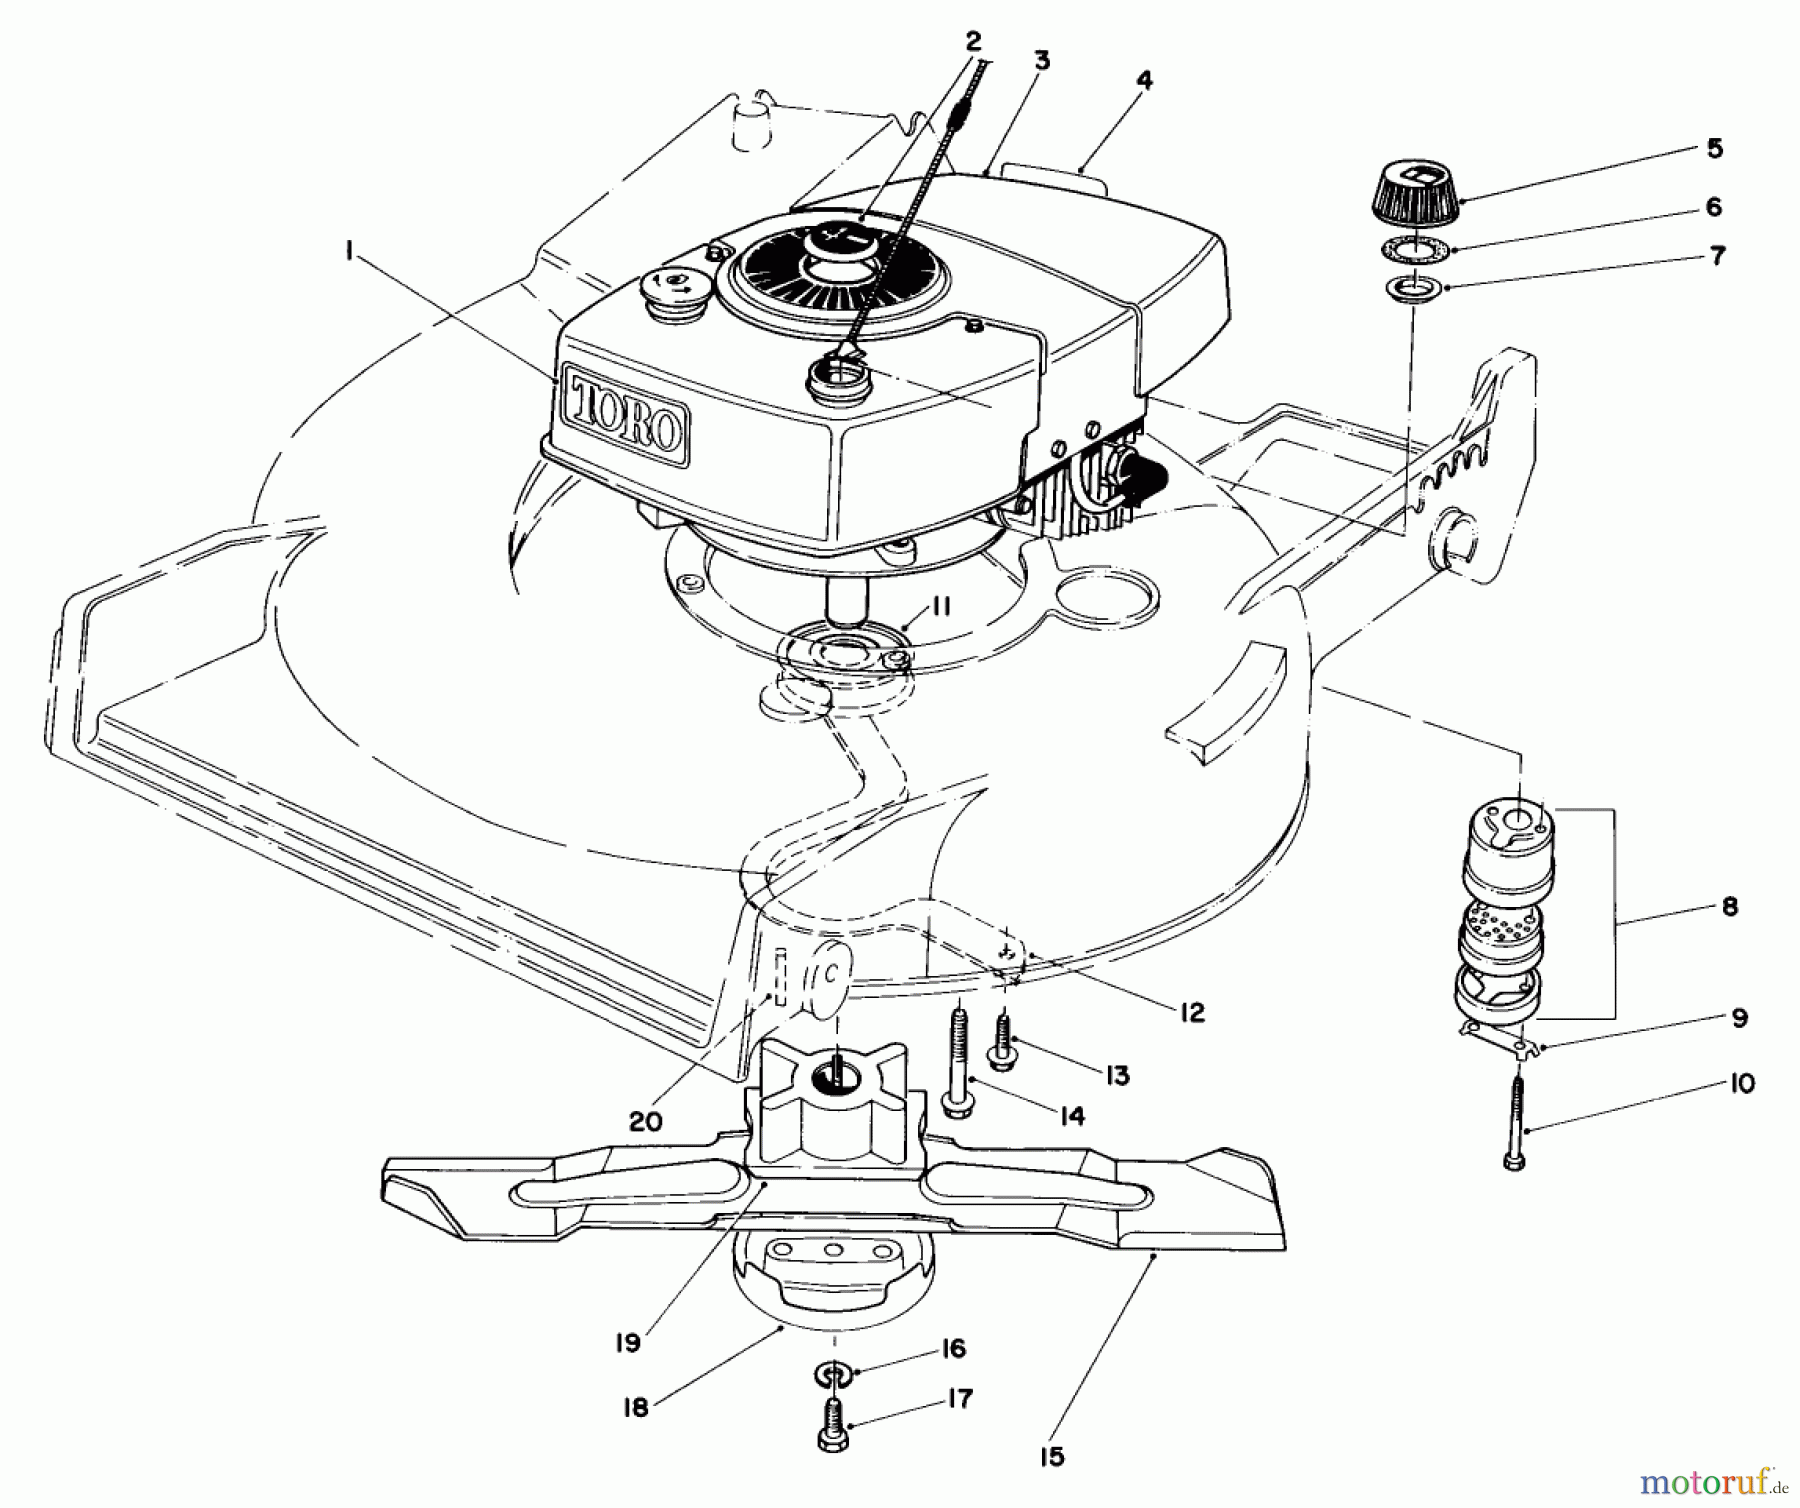  Toro Neu Mowers, Walk-Behind Seite 1 20674 - Toro Lawnmower, 1983 (3000001-3999999) ENGINE ASSEMBLY